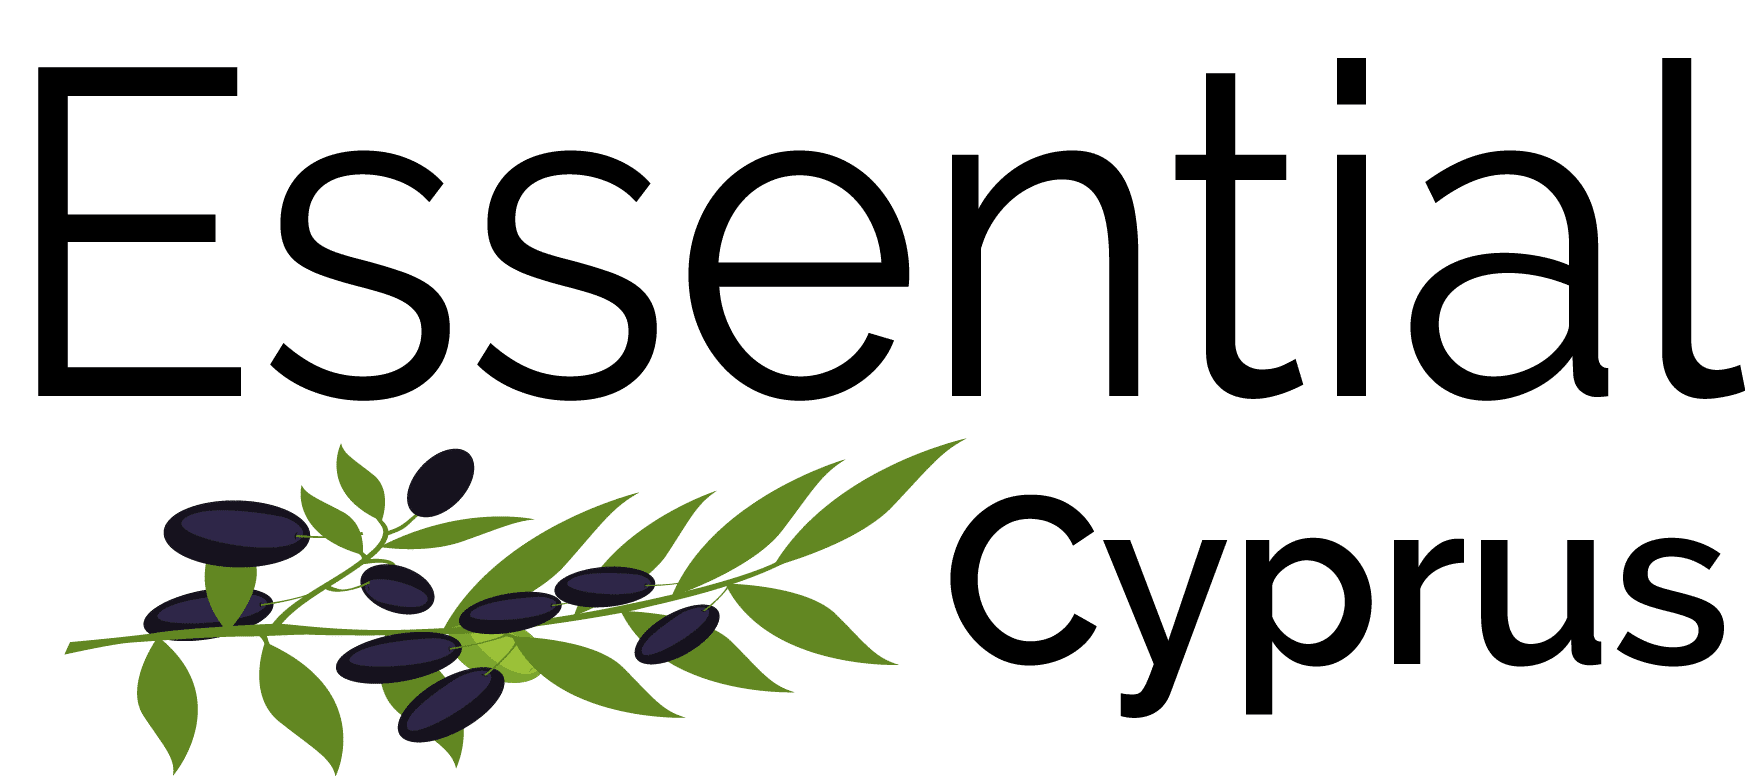 essential cyprus website